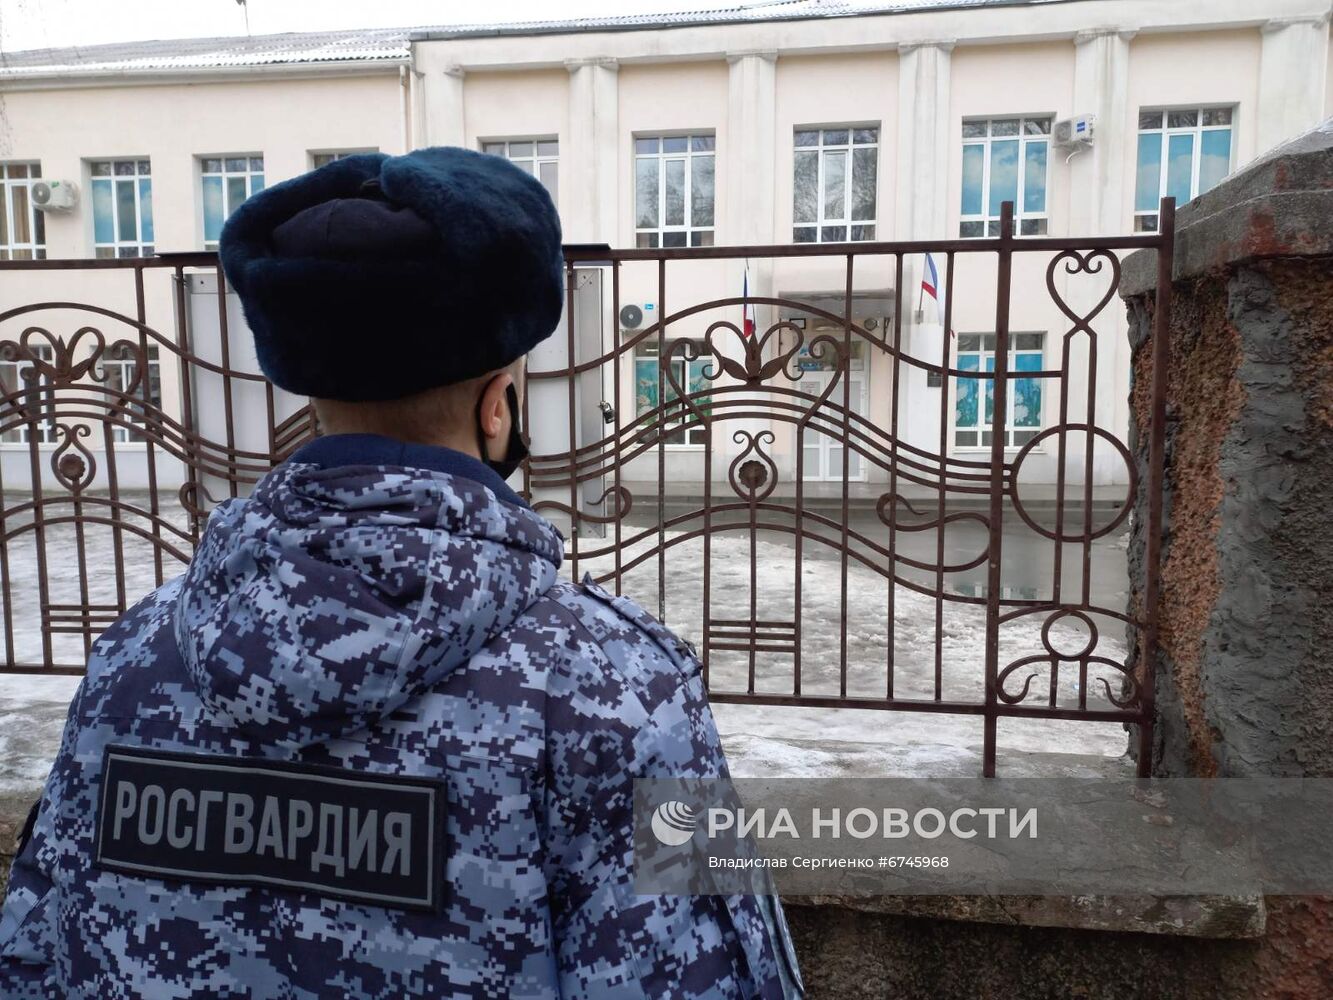 Сообщения о минировании поступили в учебные заведения Крыма